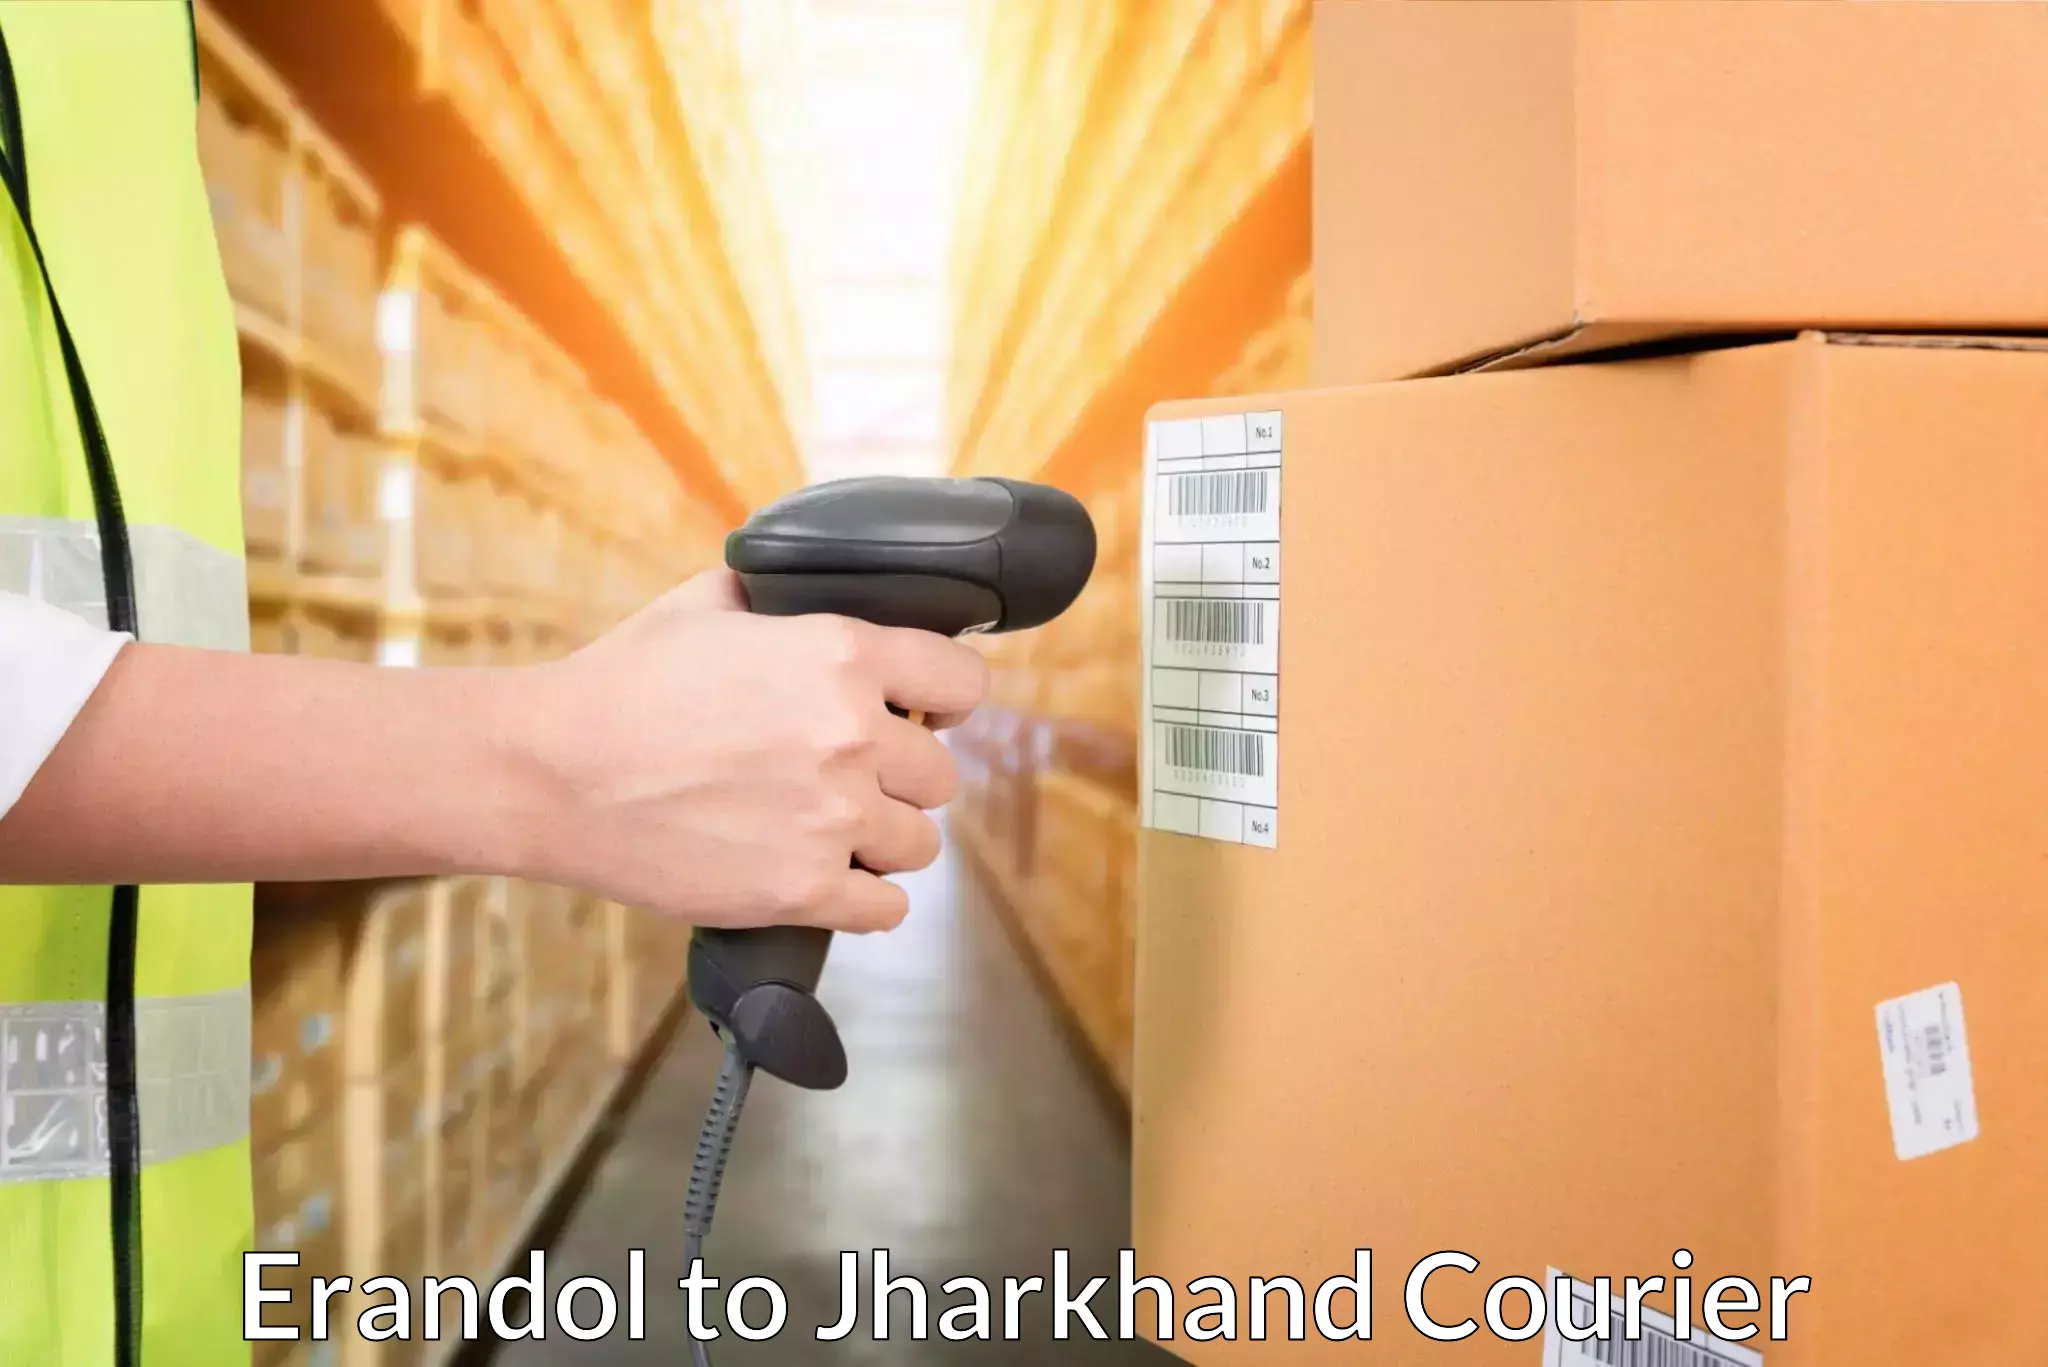 Efficient cargo services Erandol to Jharkhand